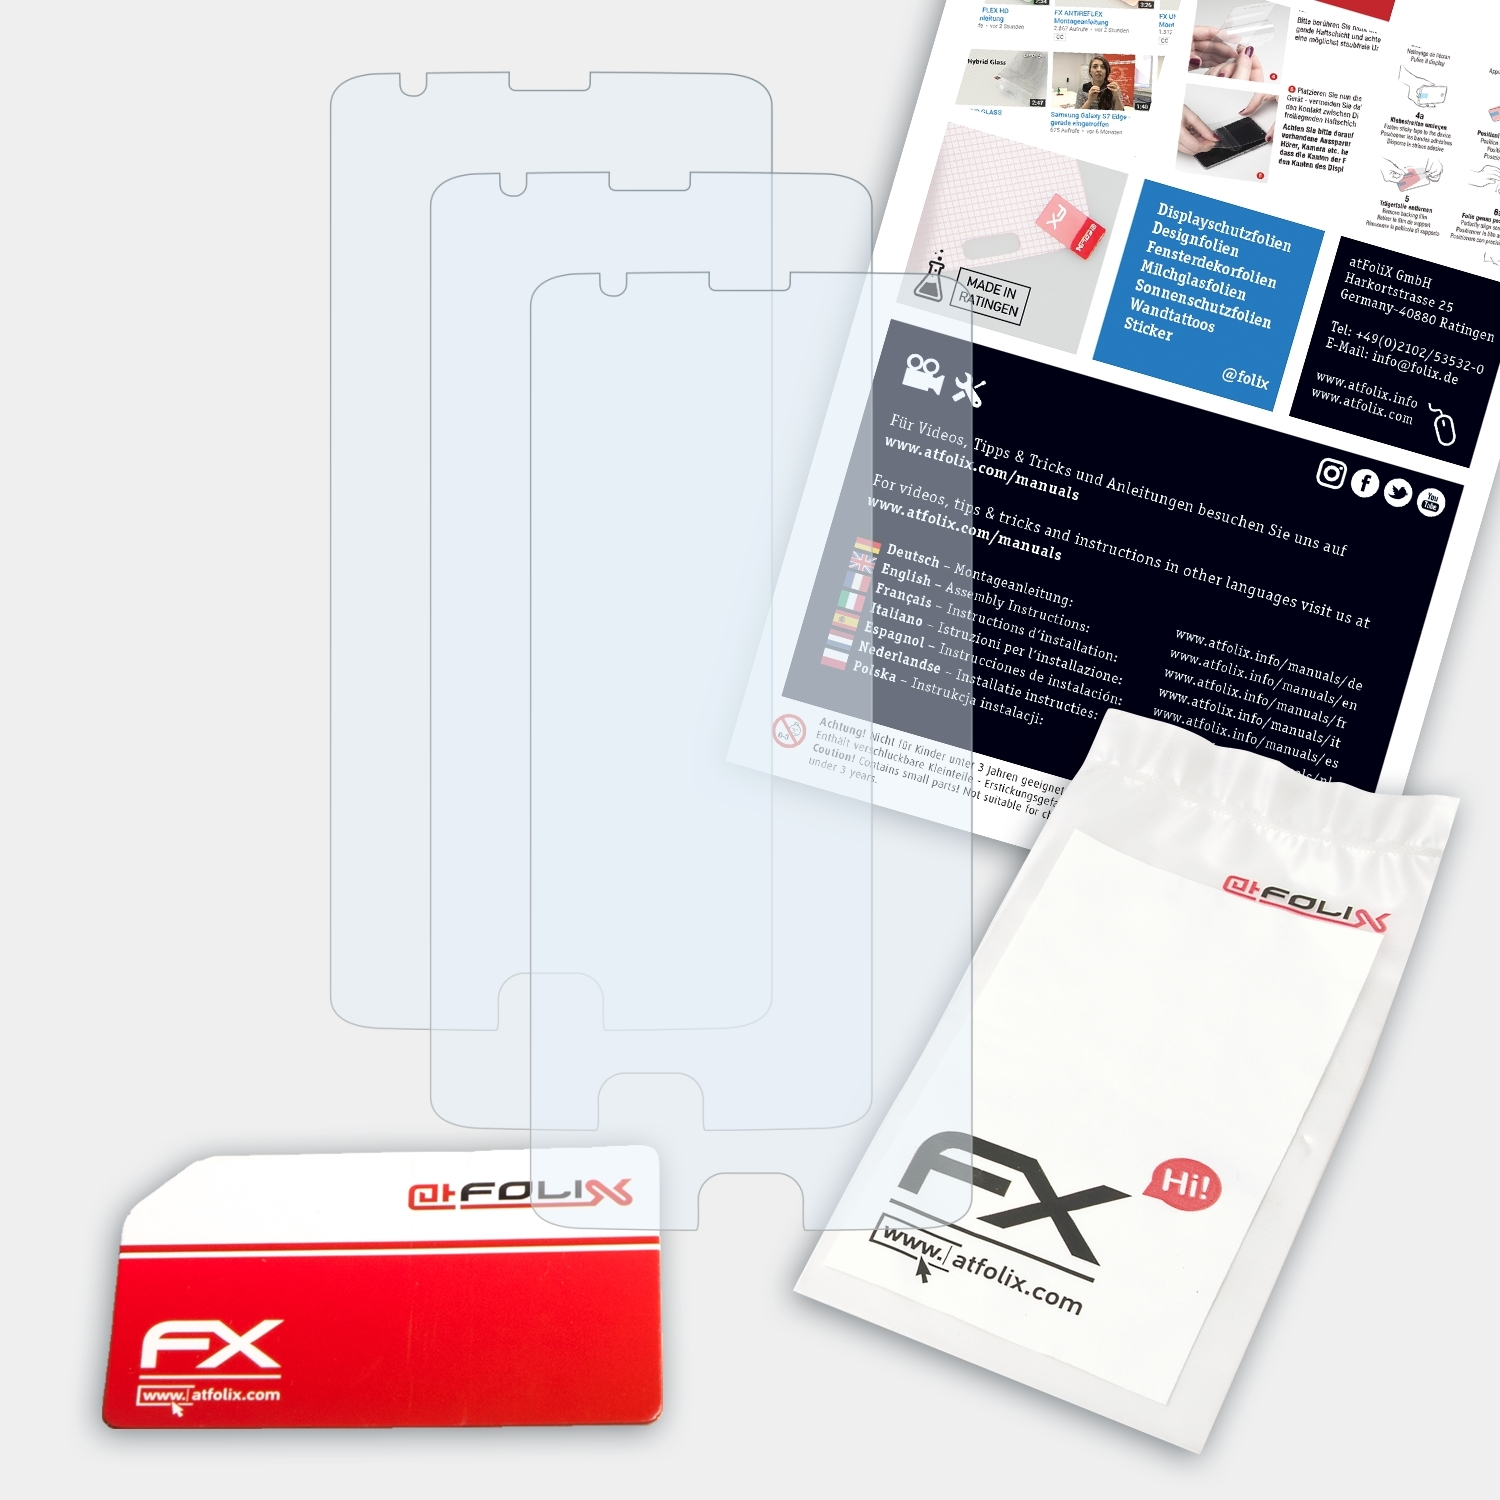 3x Three) OnePlus FX-Clear Displayschutz(für ATFOLIX